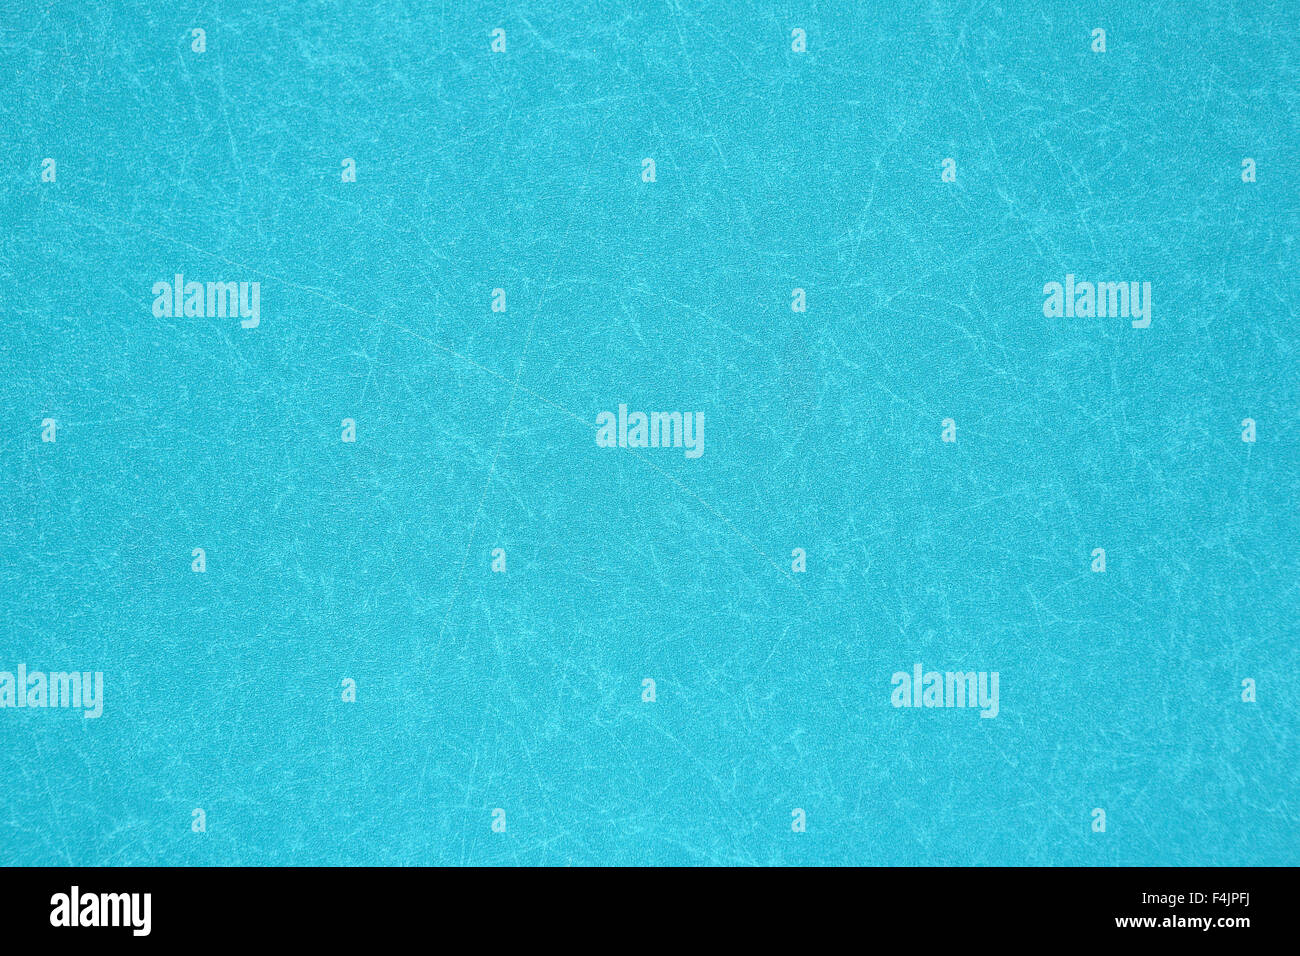 Aquamarine background Stock Photo